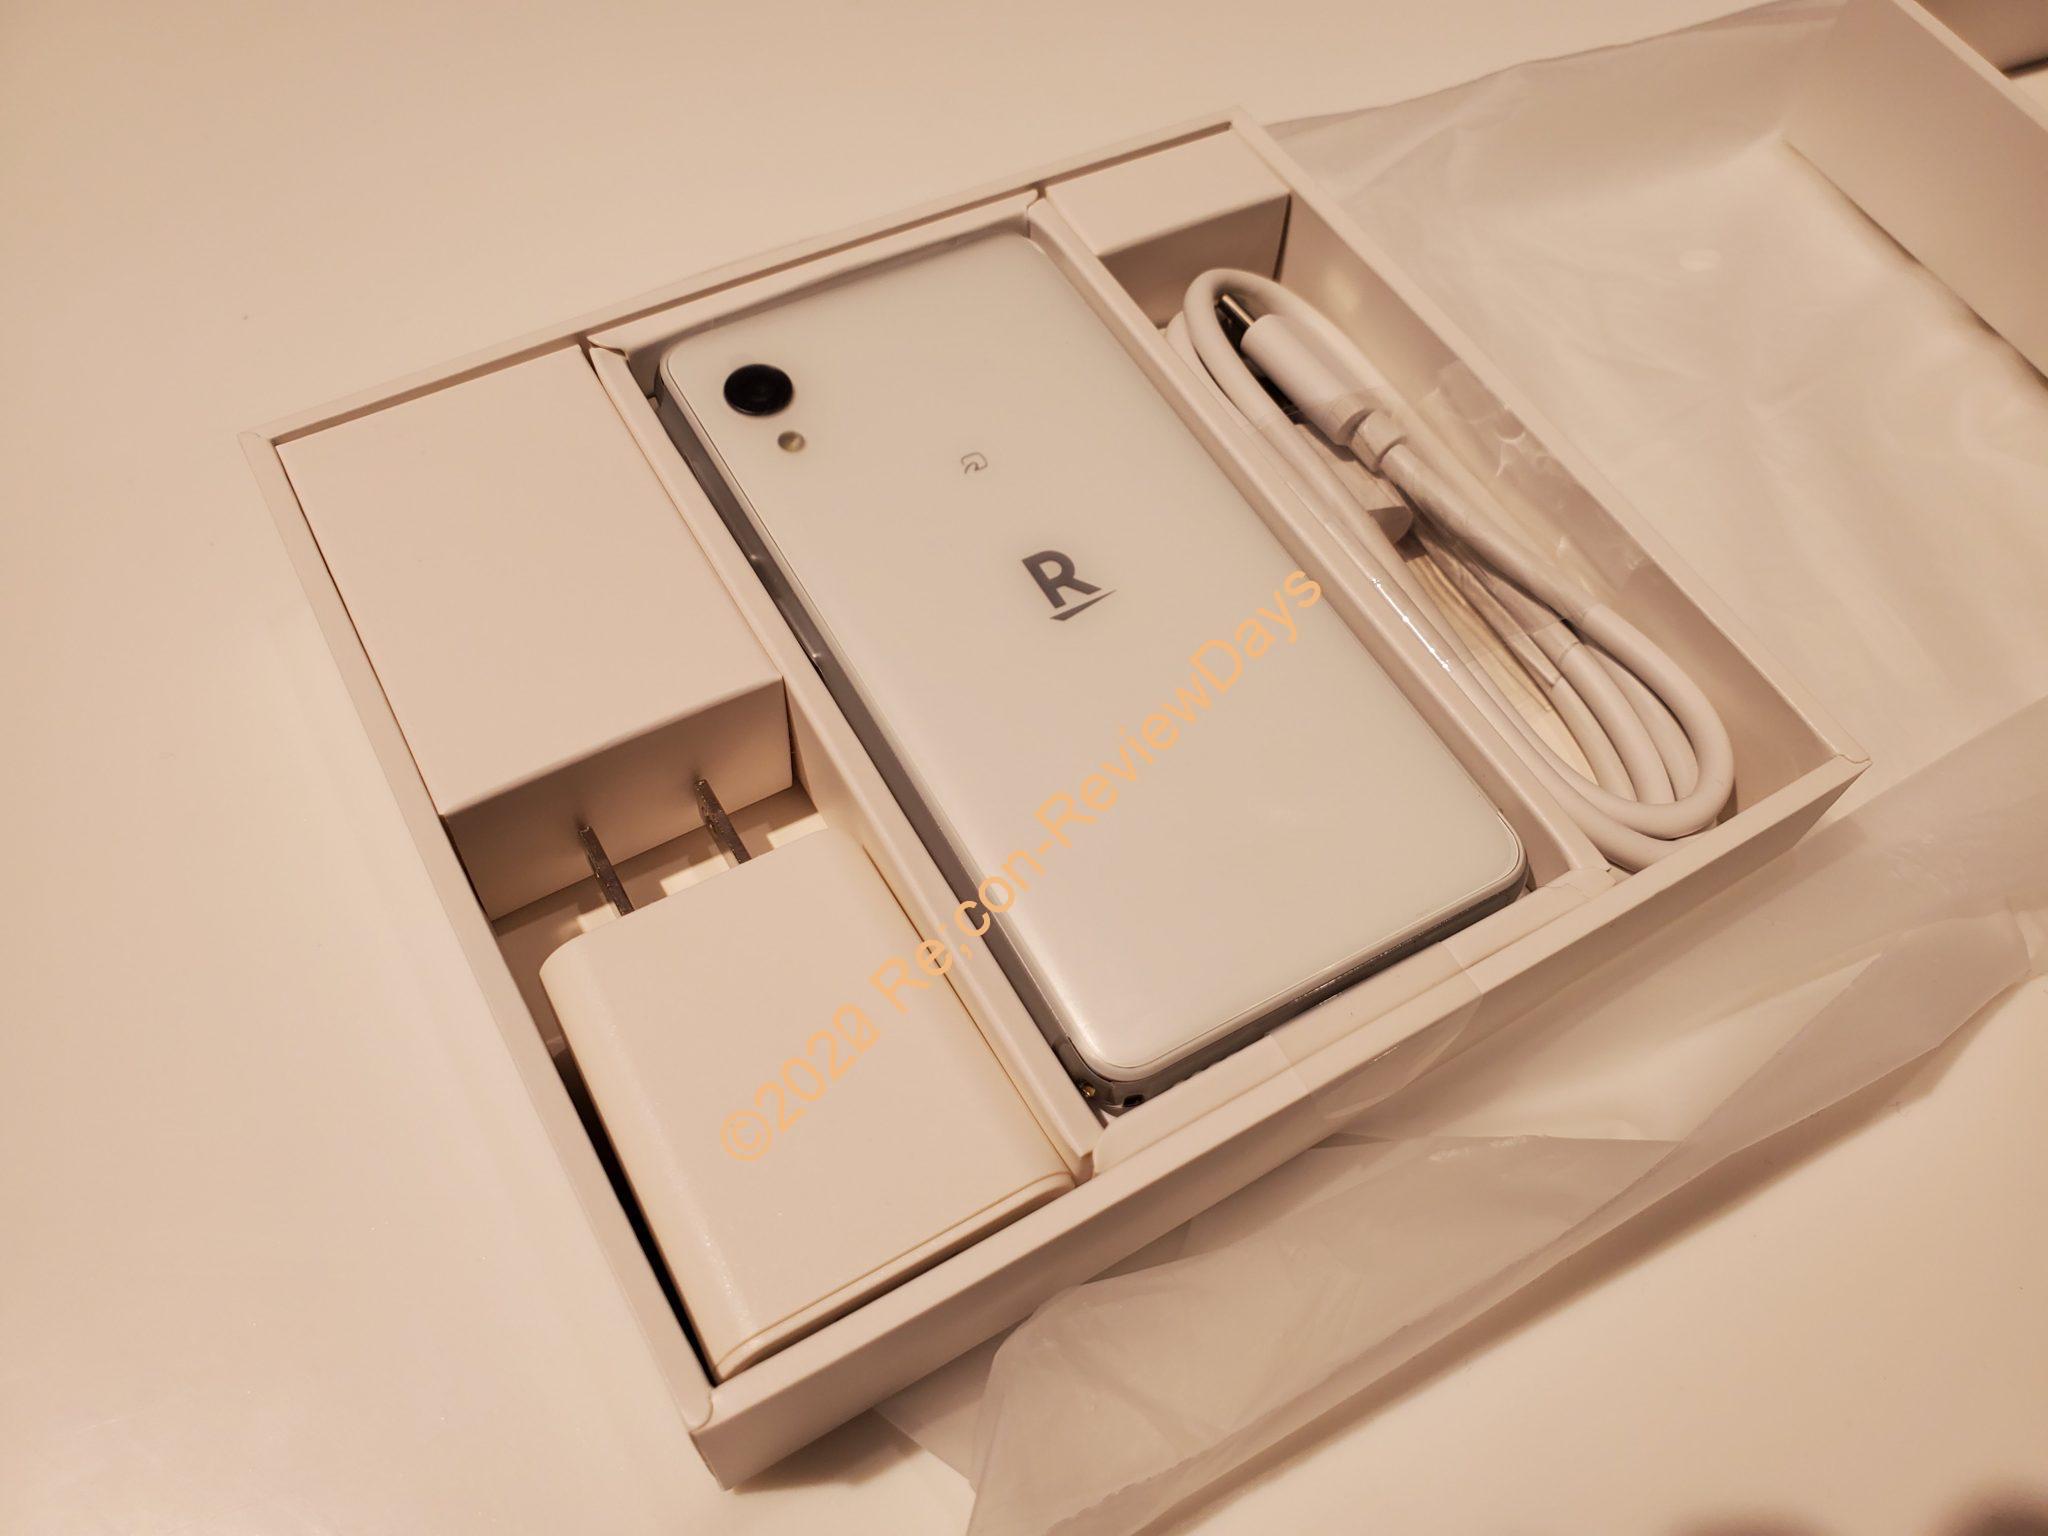 突如店頭発売が始まった楽天モバイル製の小型スマートフォン「Rakuten mini」を購入してきました #楽天モバイル #Rakuten #RakutenMobile